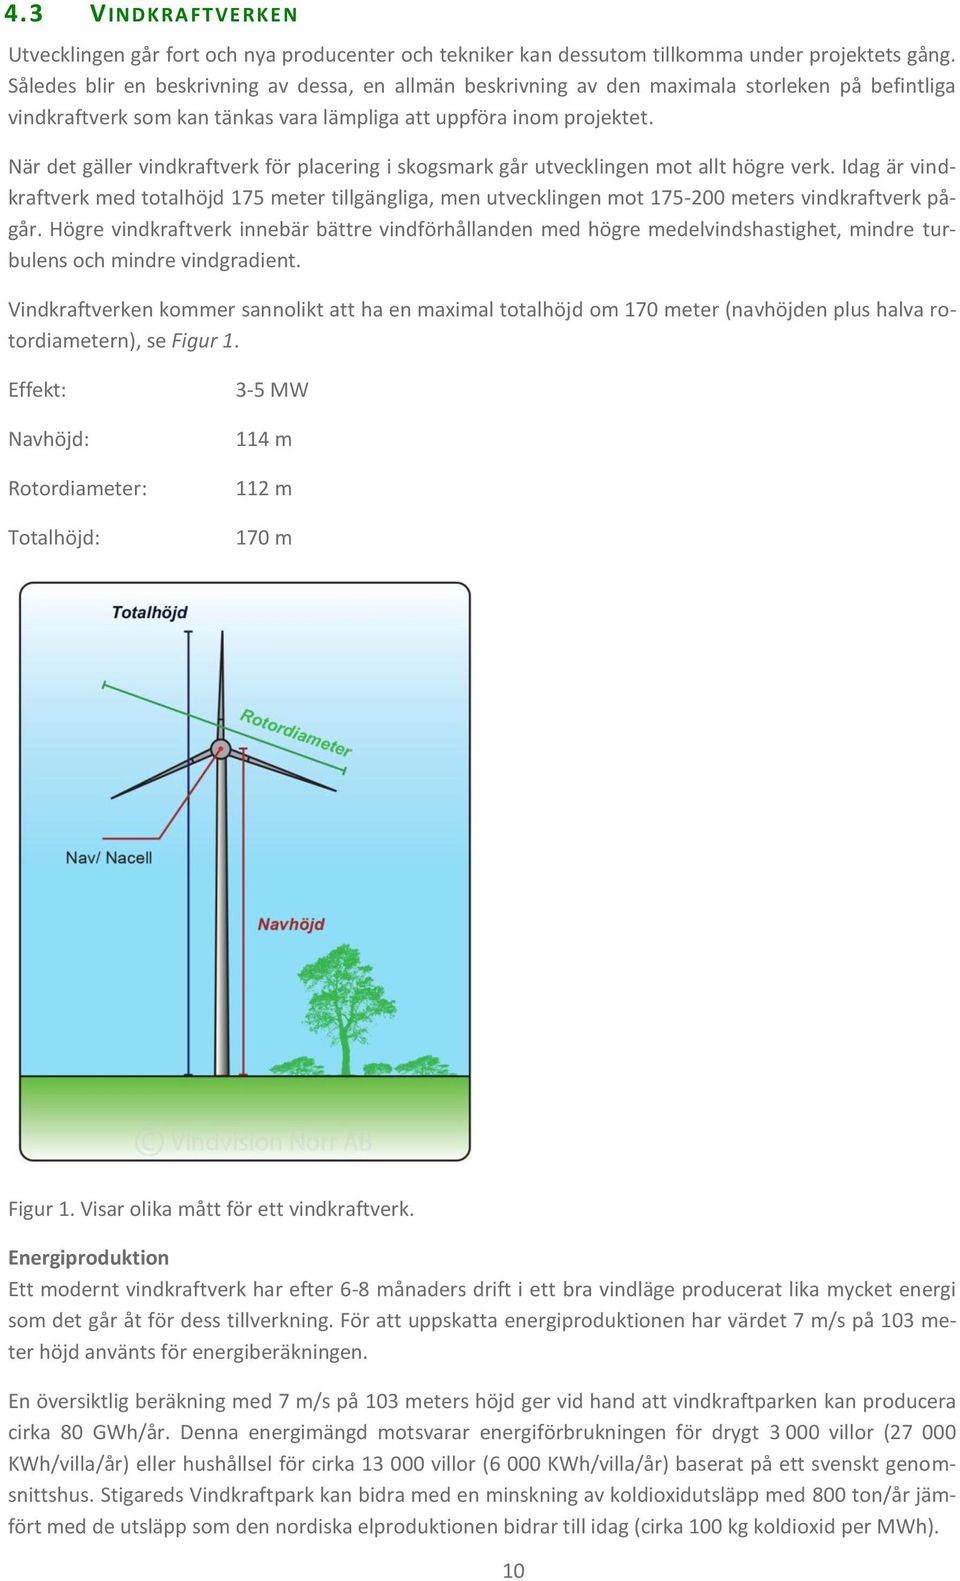 När det gäller vindkraftverk för placering i skogsmark går utvecklingen mot allt högre verk.